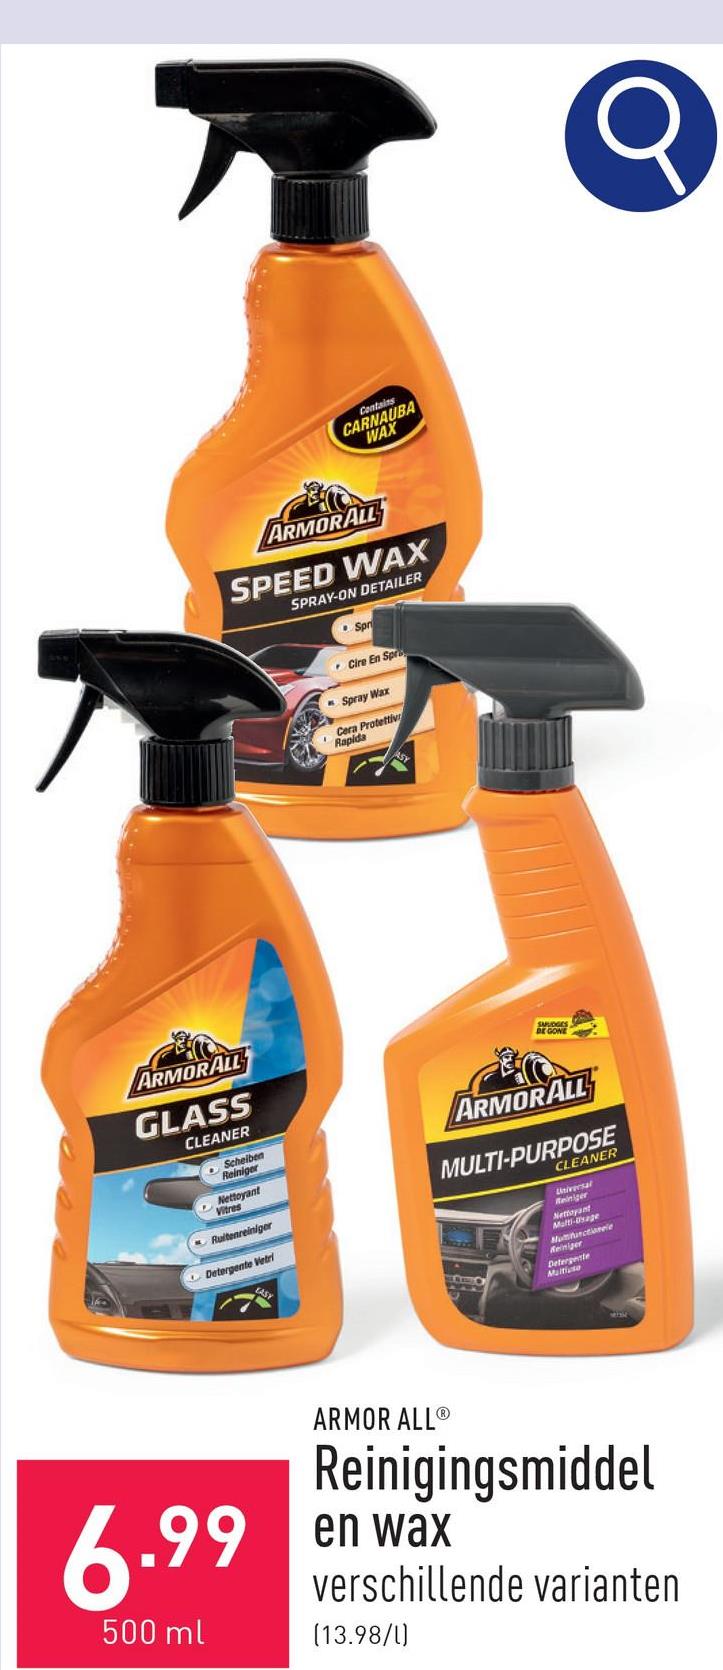 Reinigingsmiddel en wax keuze uit Glass Cleaner (ruitenreiniger), Multi-purpose Cleaner (verwijdert hardnekkig vuil) en Speed Wax (geeft glans)